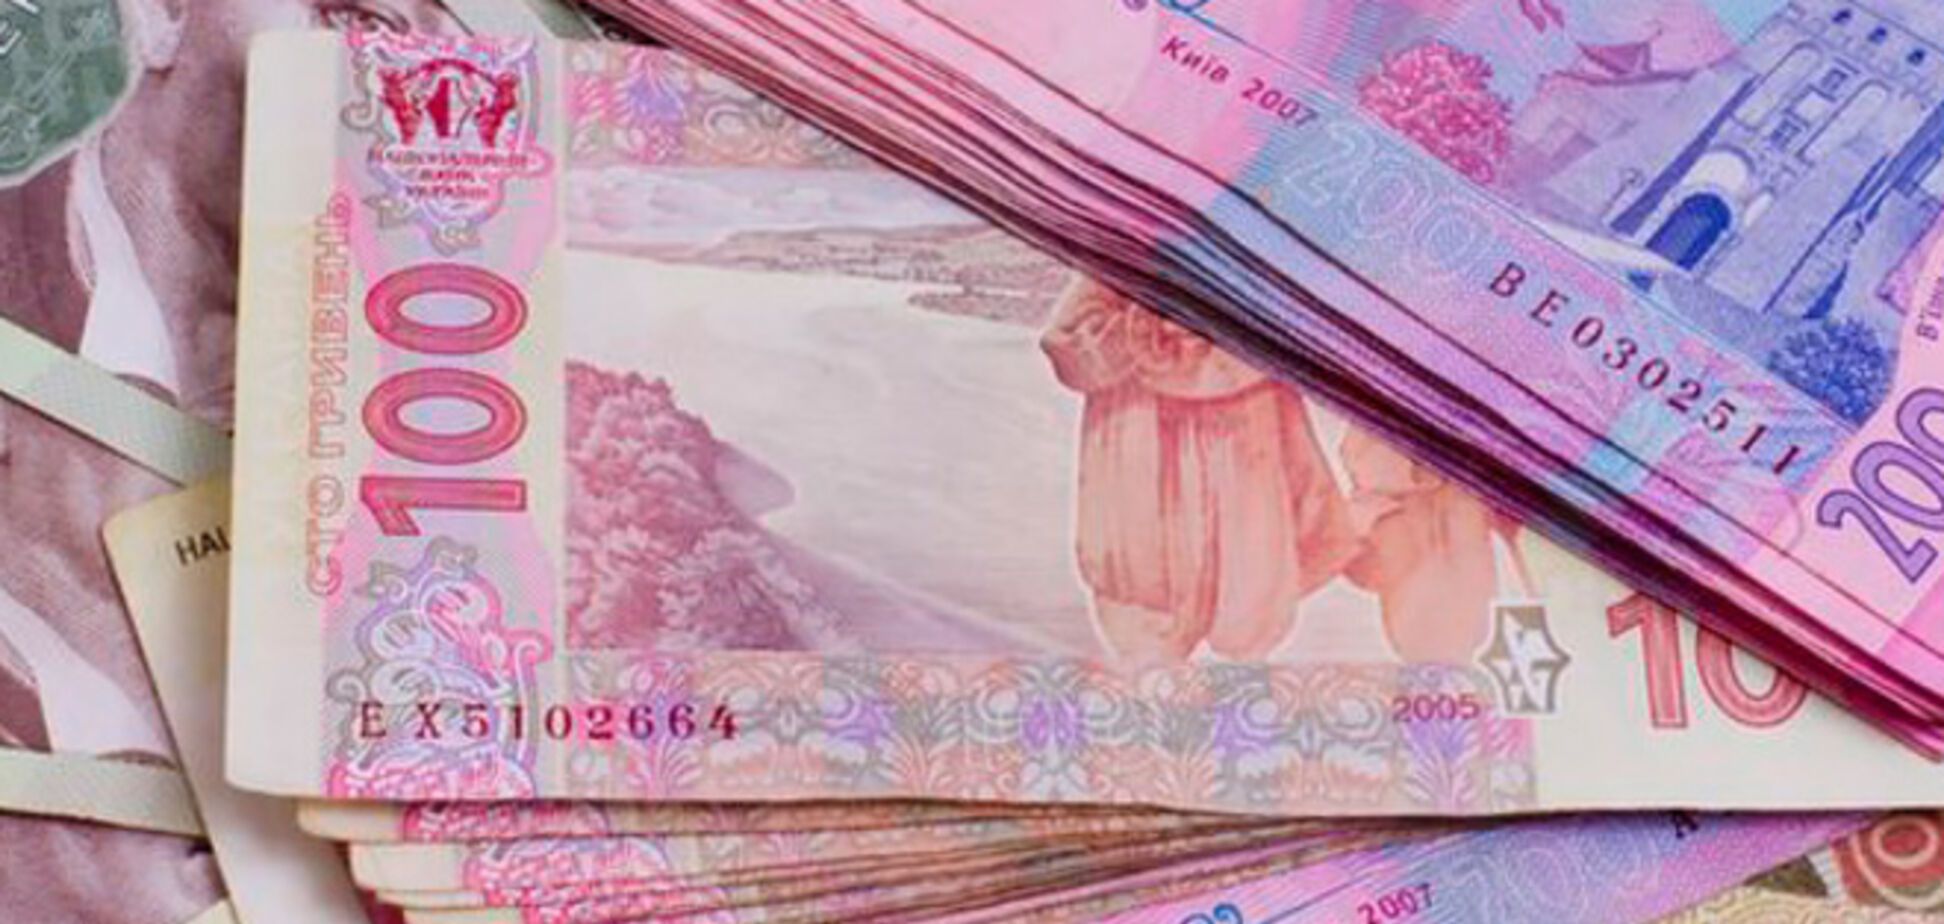 Обвал курса гривни. Что будет с украинской валютой, и как ее спасти